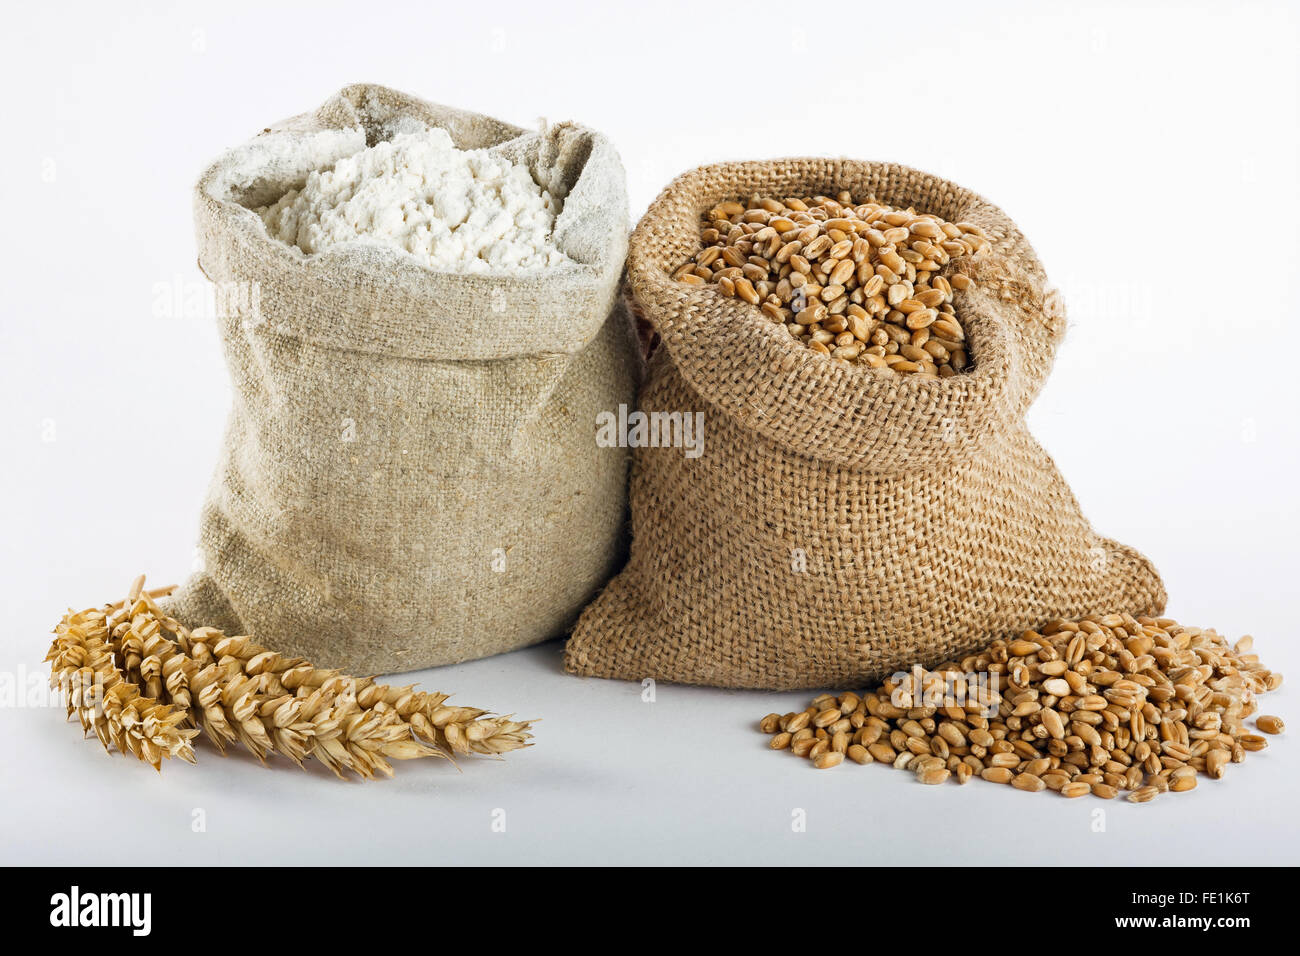 La farine et le grain de blé dans de petits sacs de toile Banque D'Images